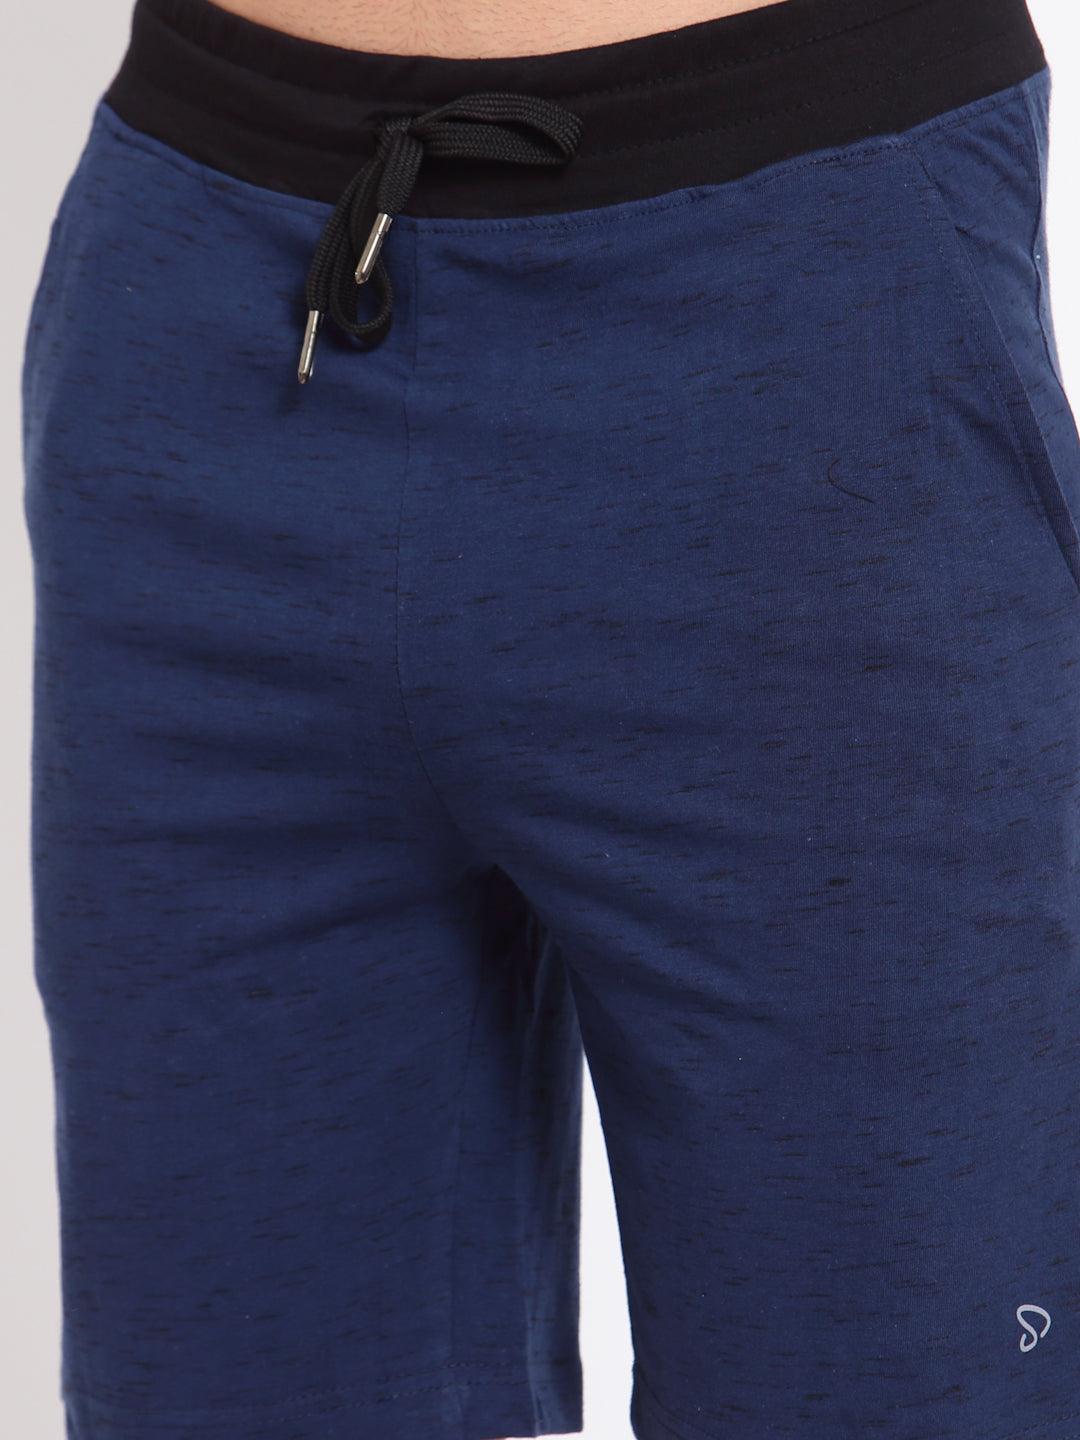 Sporto Men's Lounge Shorts - Petrol Blue